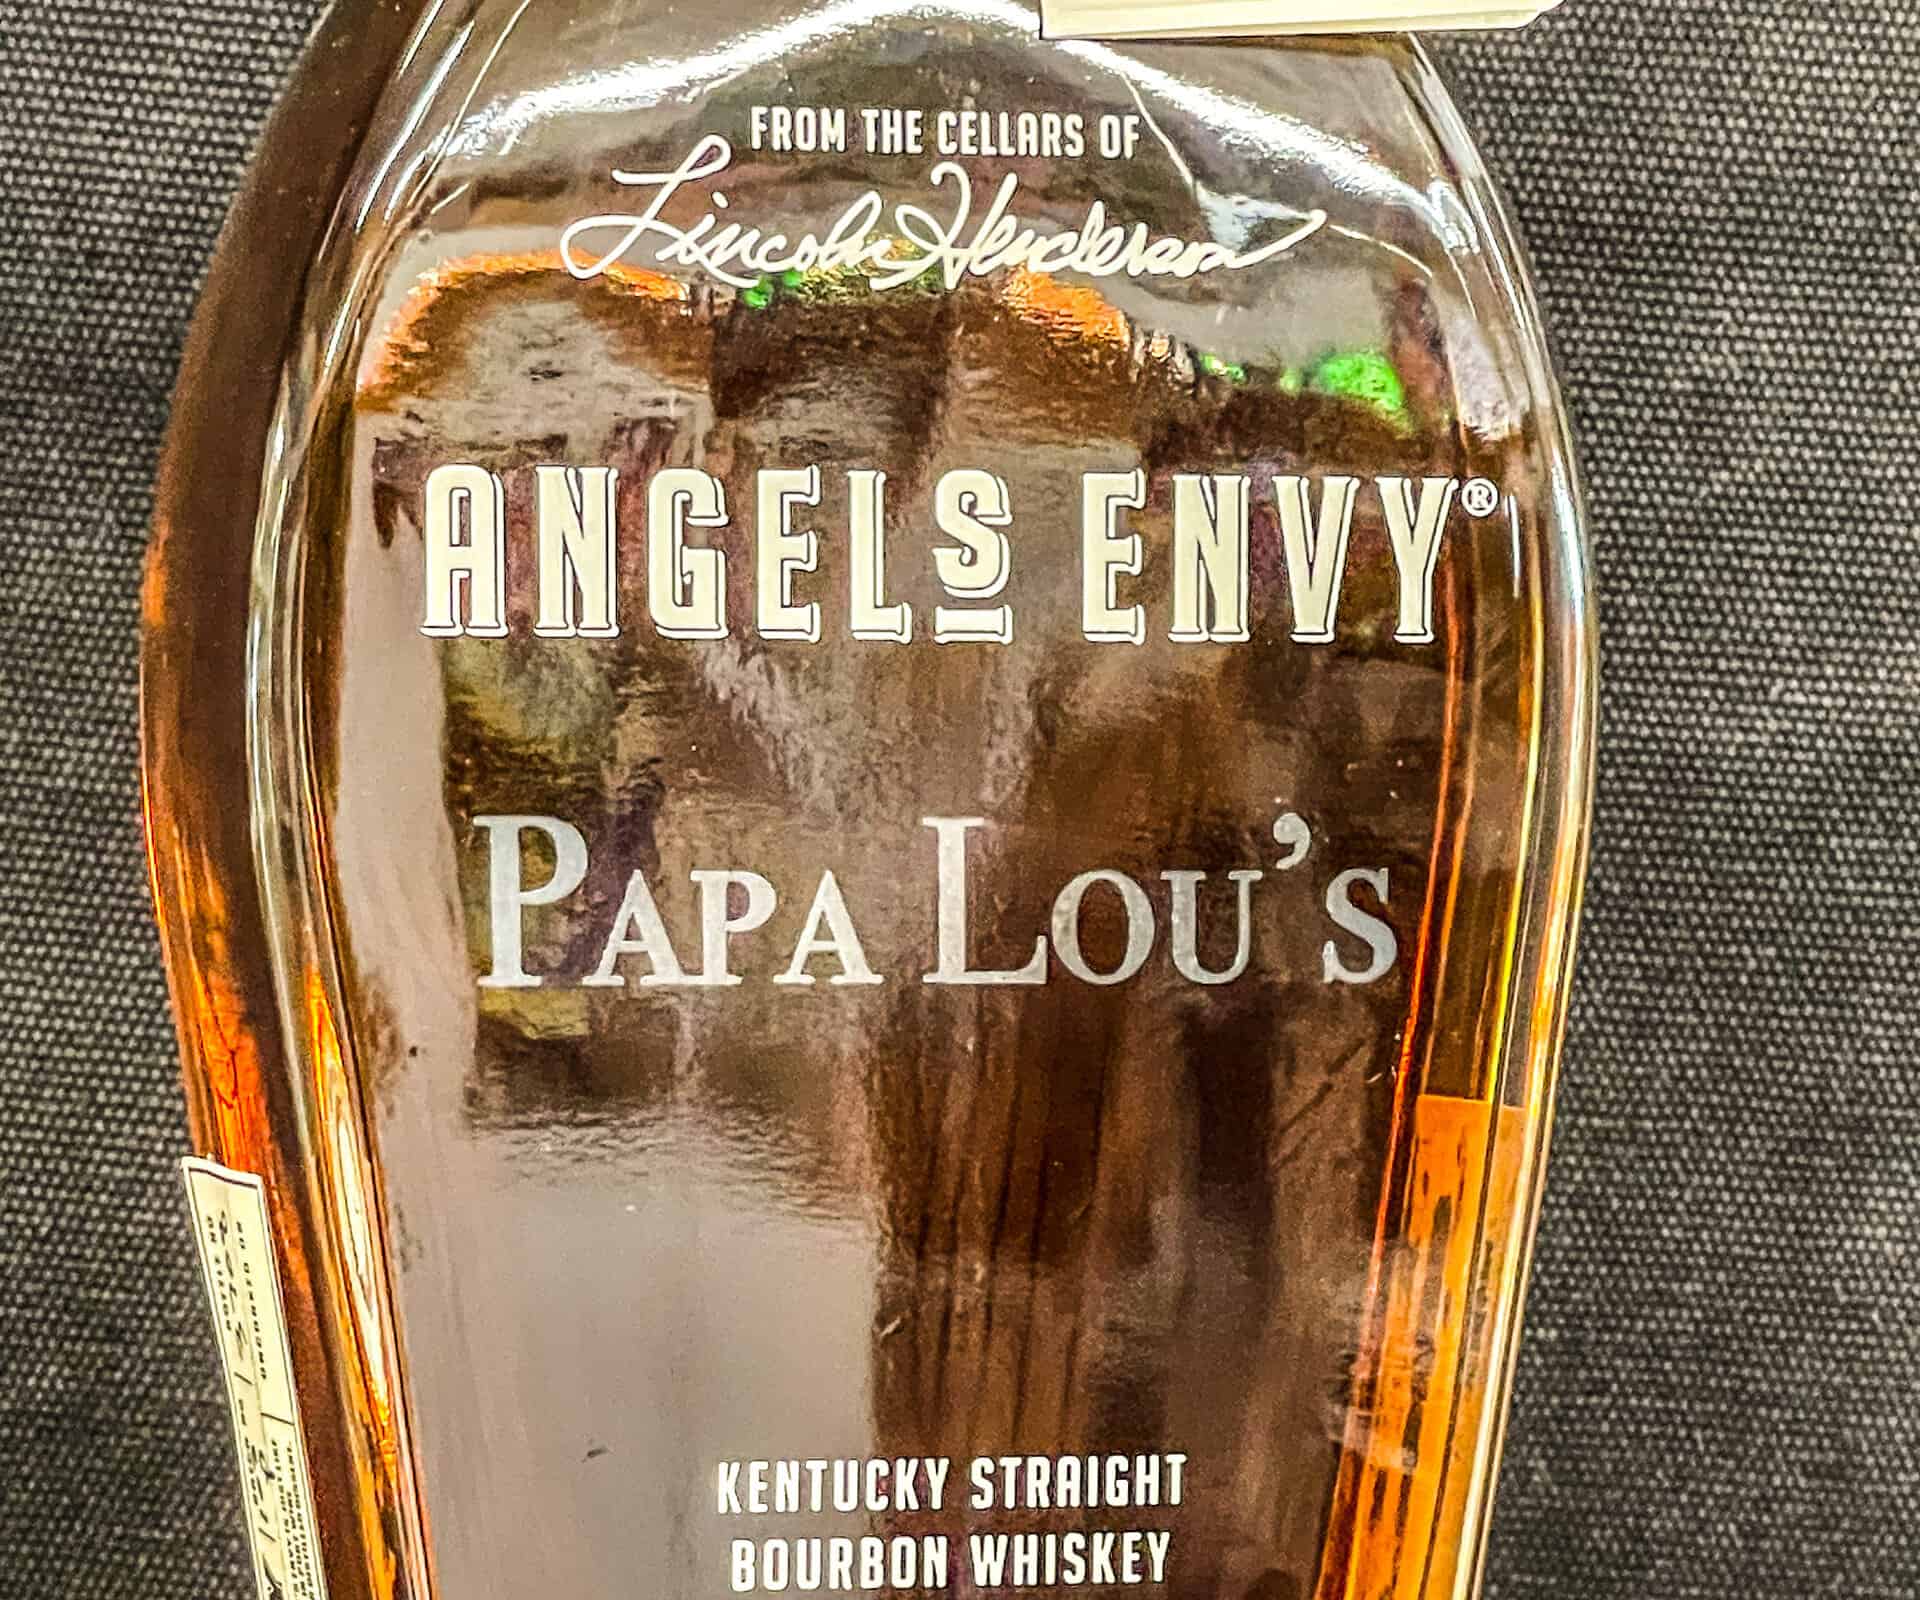 Angel's envy engraved whiskey bottle